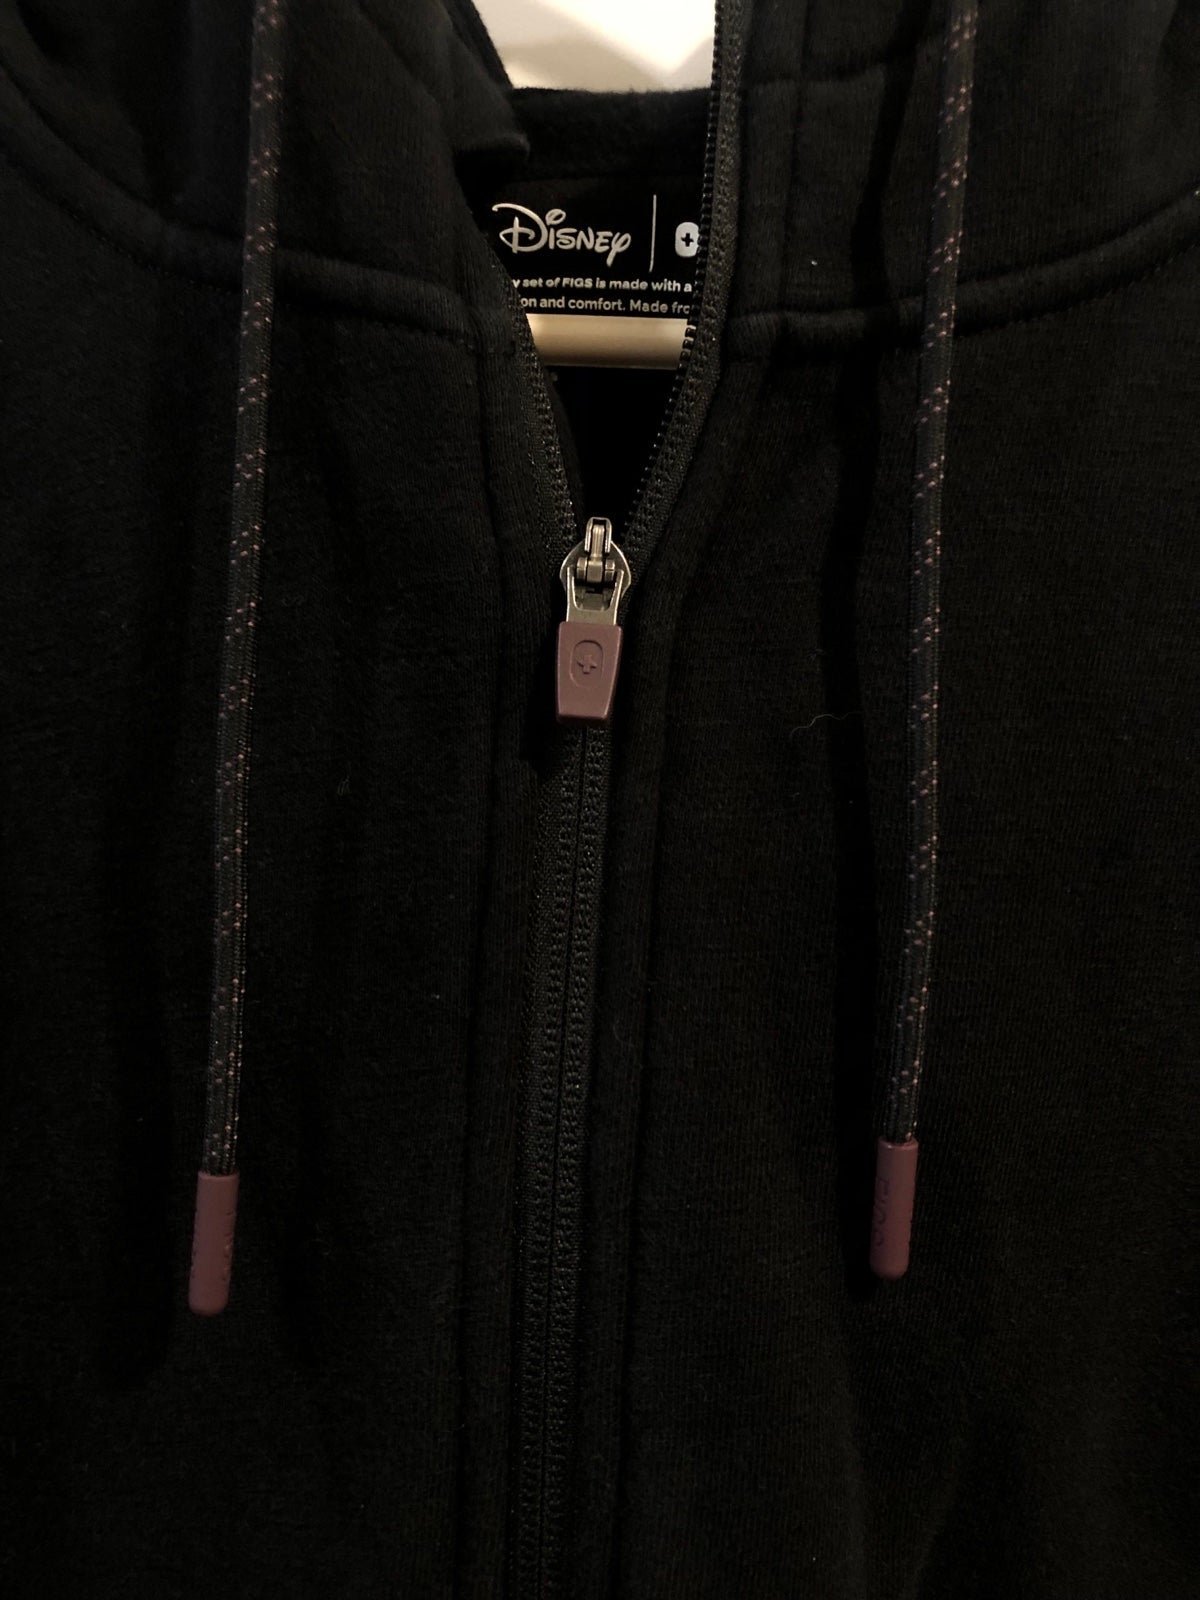 Comfortable Figs X Disney Fleece Full Zip Hoodie Sweater Women’s Size Medium IFbO13RGd Store Online